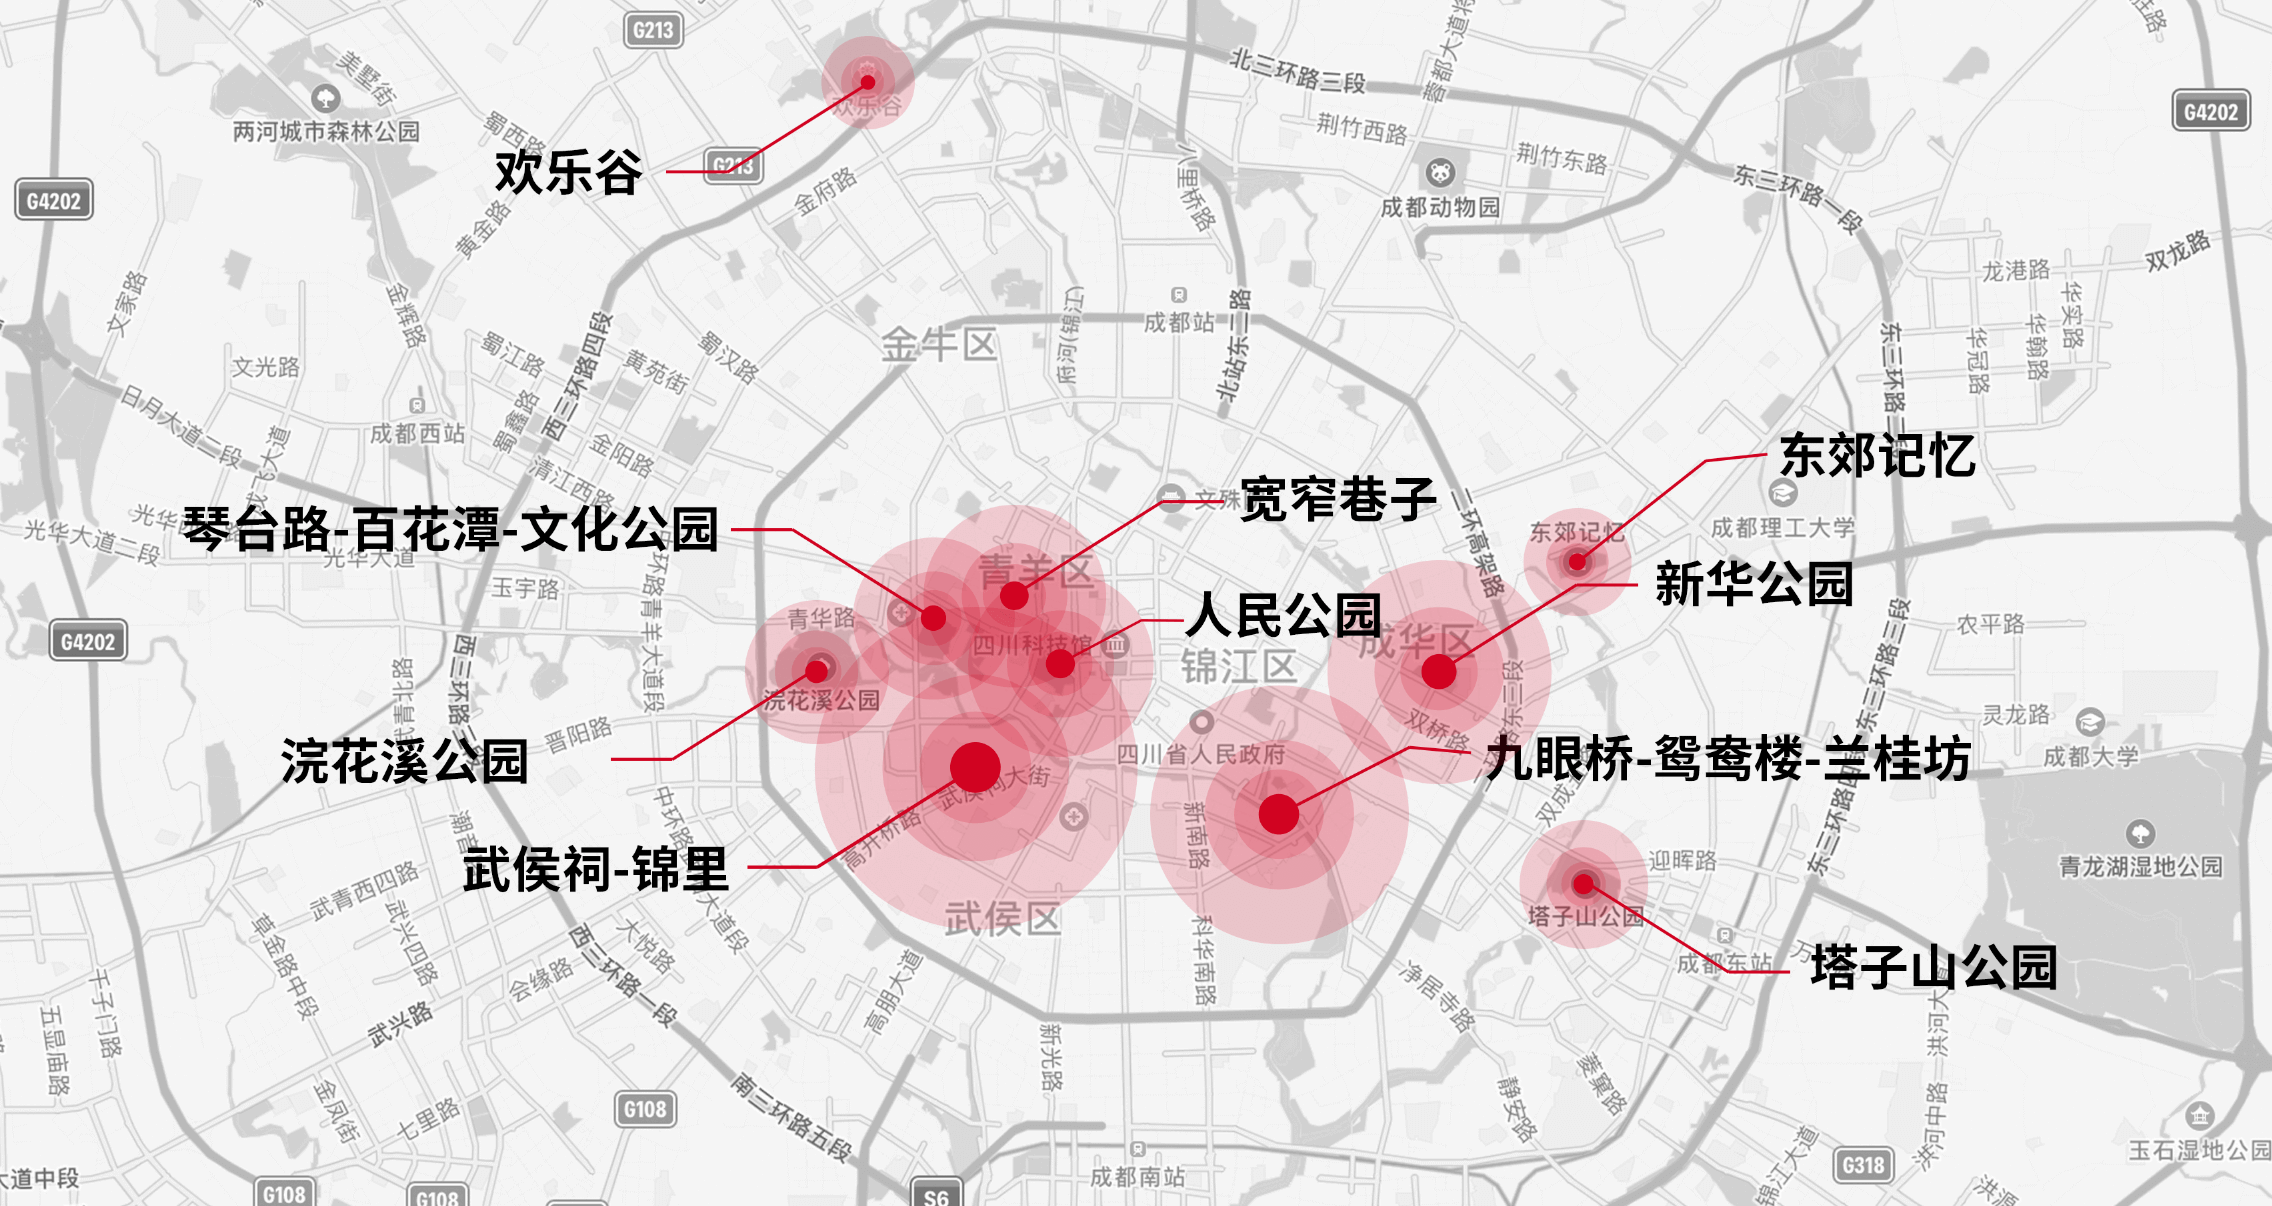 锦色无边，一张人间烟火味正浓的芙蓉城夜地图